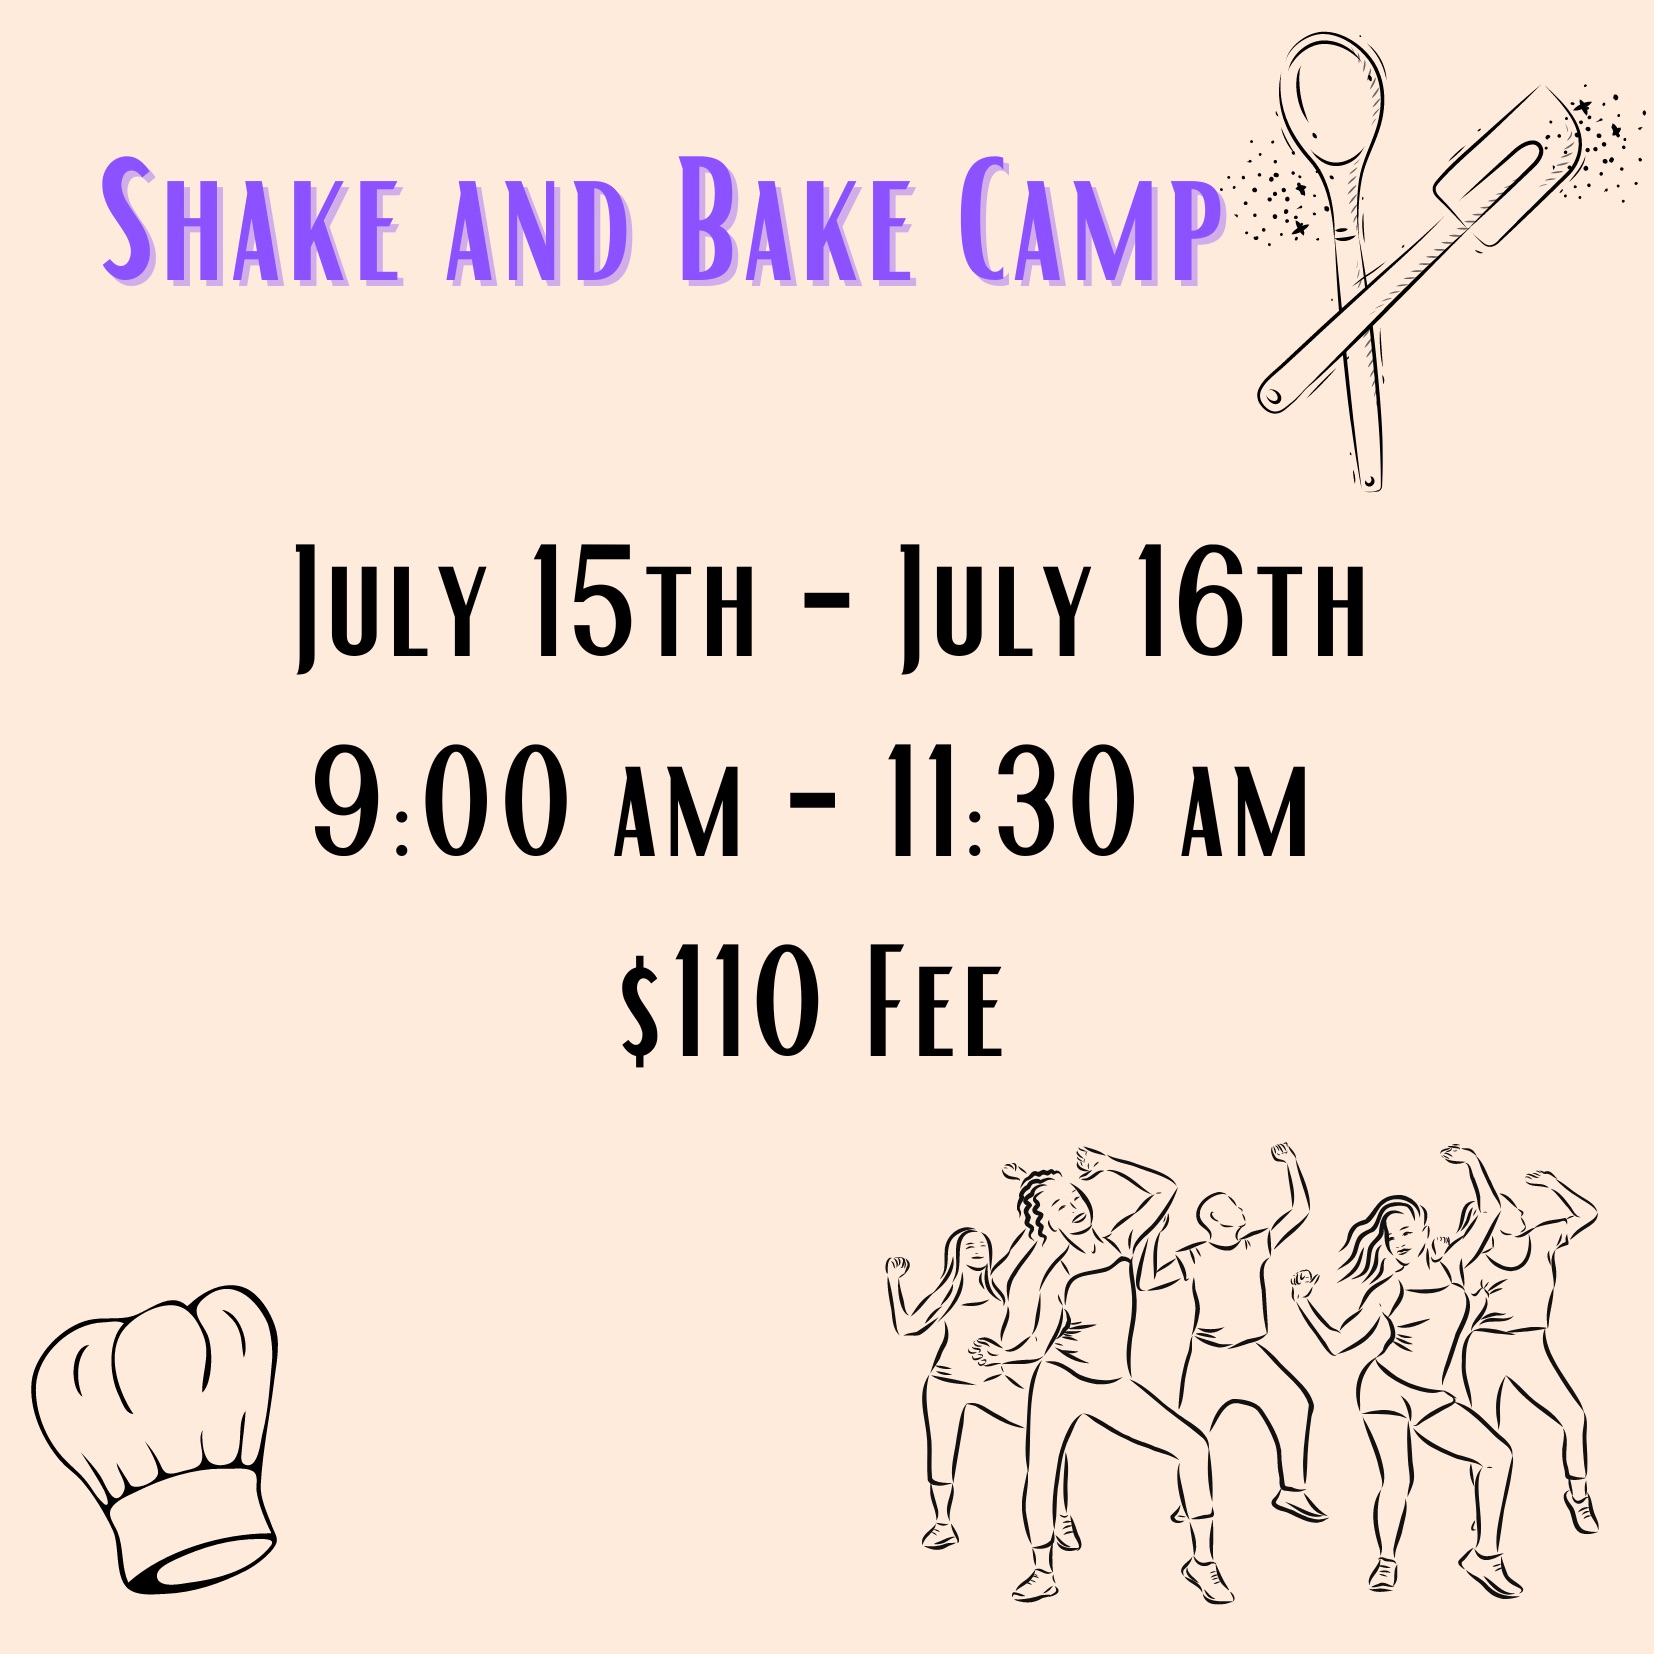 Shake and Bake Camp